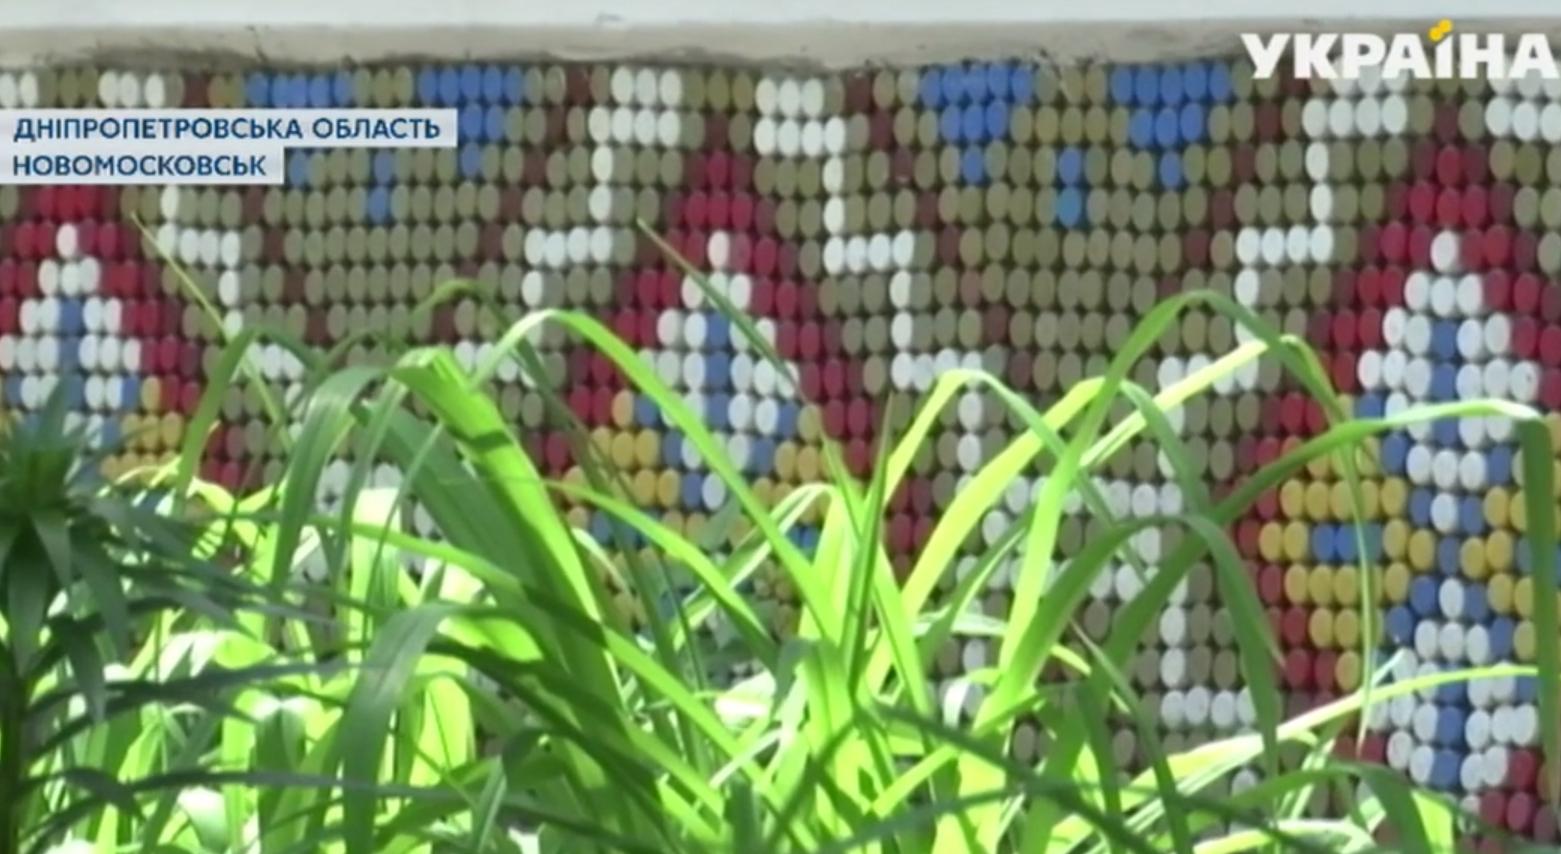 Под Днепром пенсионерка создает креативные вышиванки из пластиковых крышек (Фото). Новости Днепра